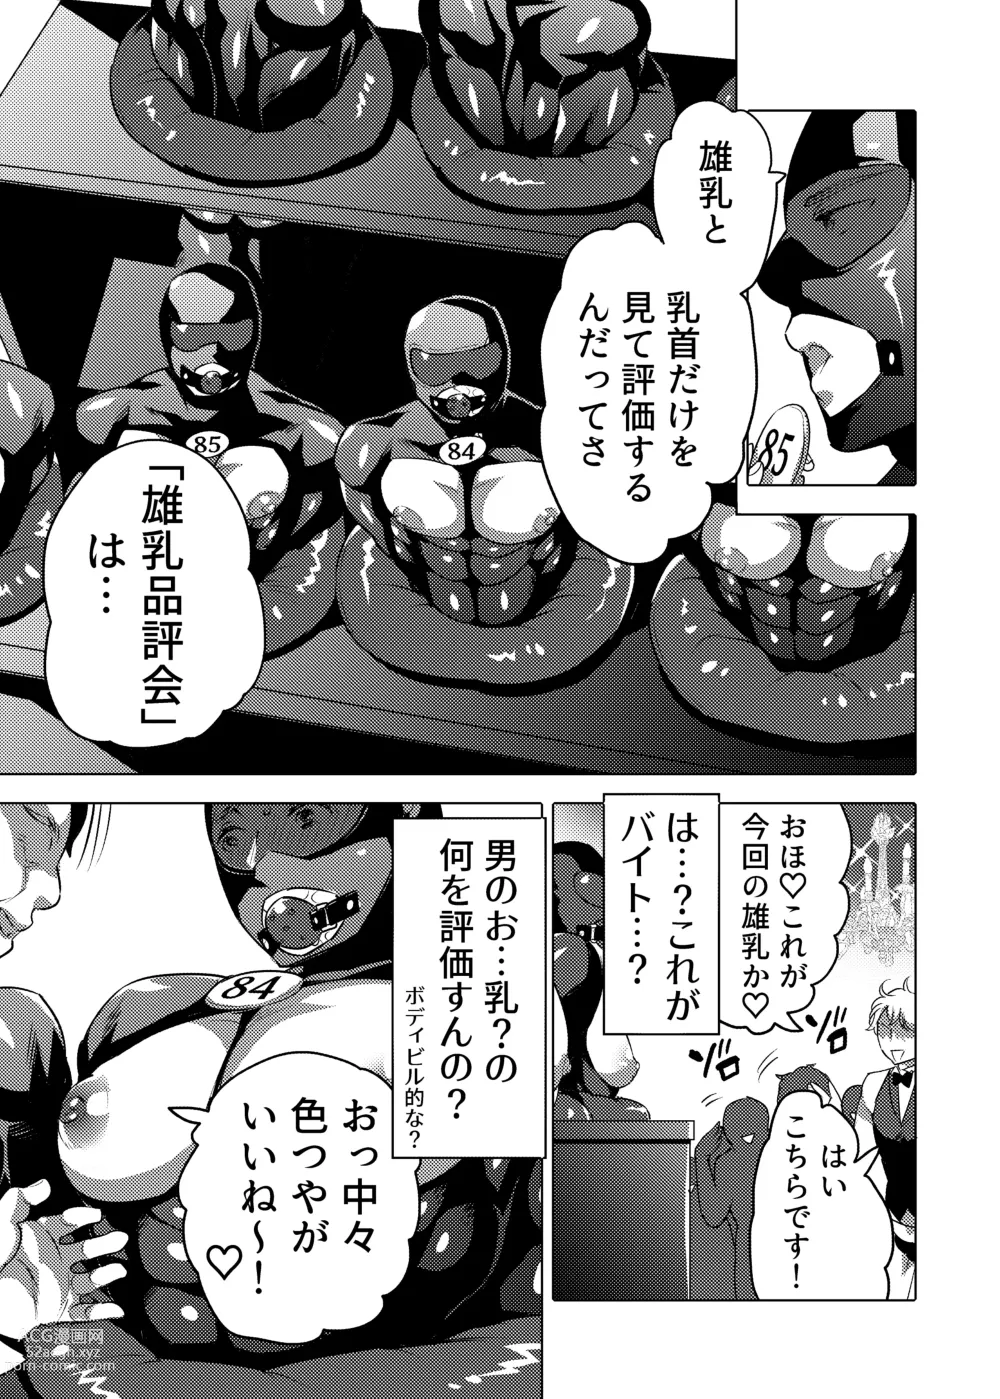 Page 5 of doujinshi Ochichi Hinpyoukai